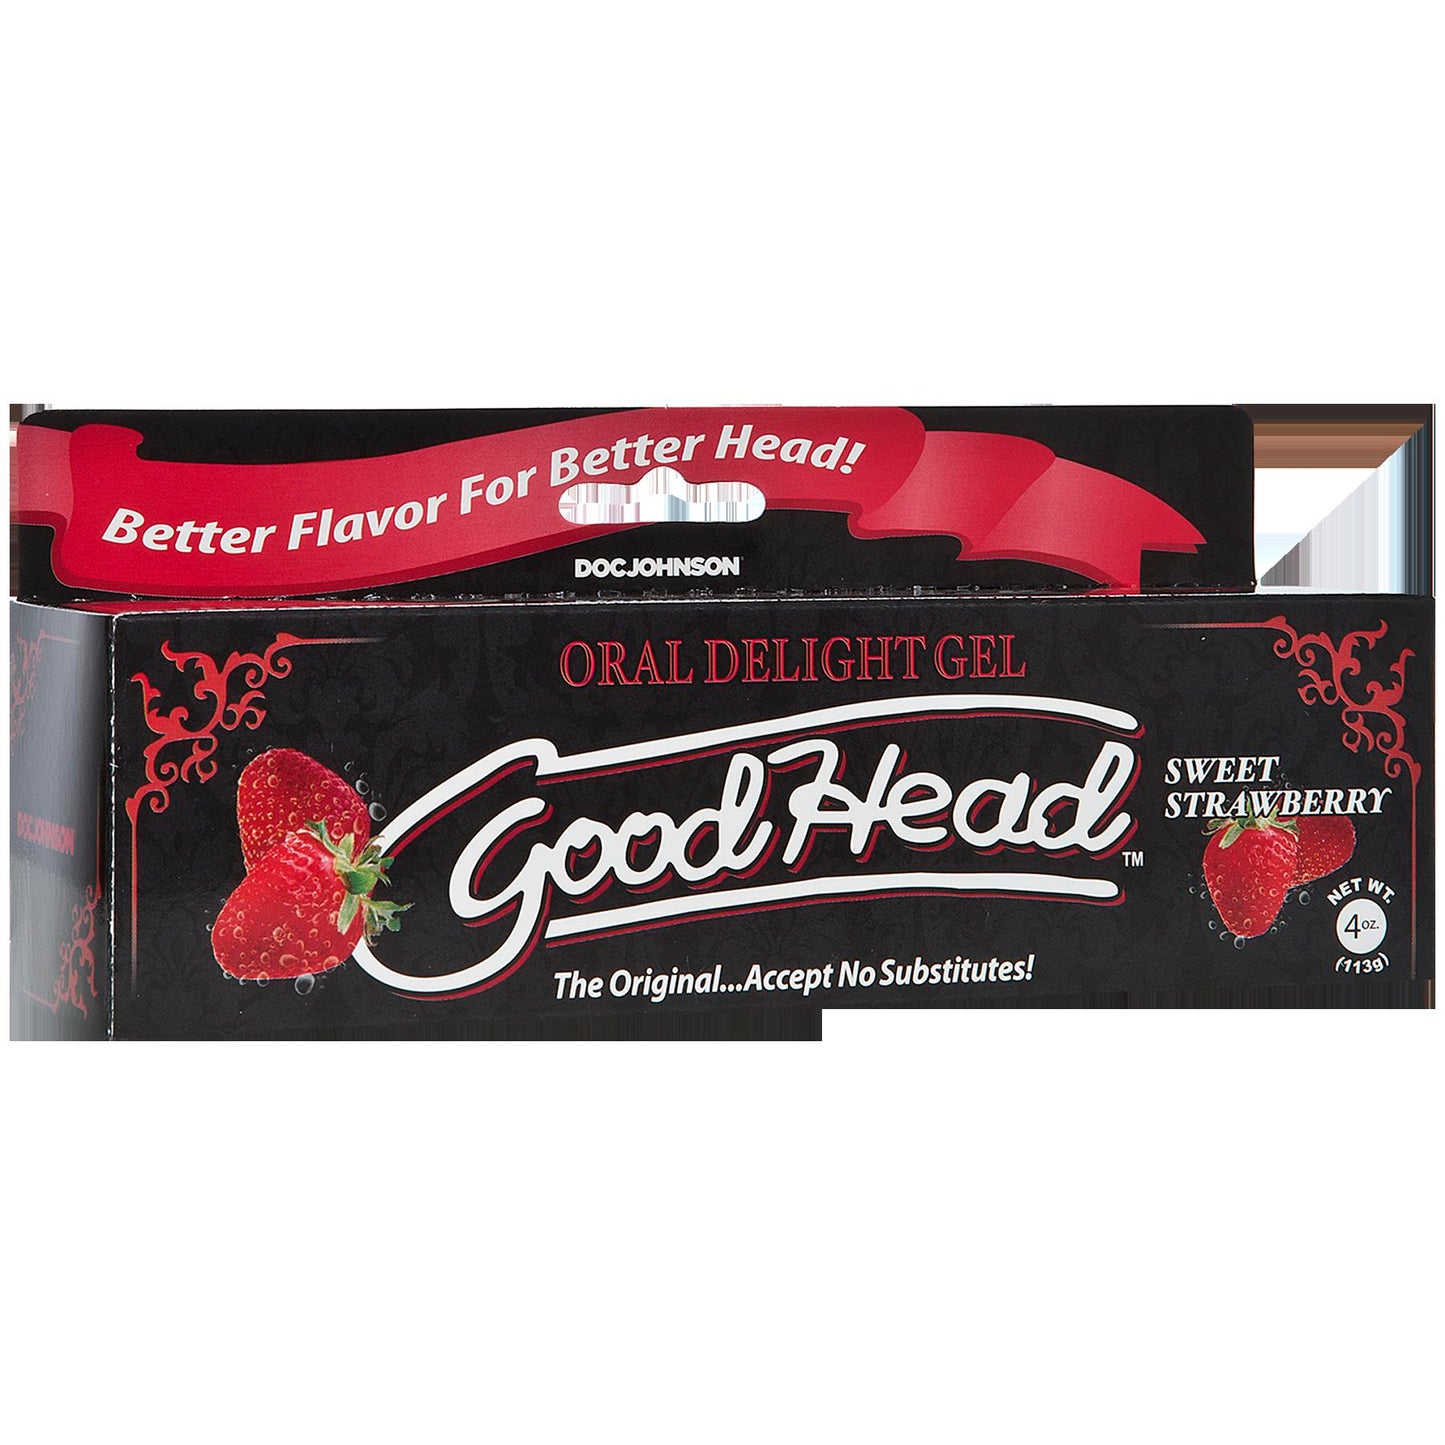 GoodHead Oral Delight Gel